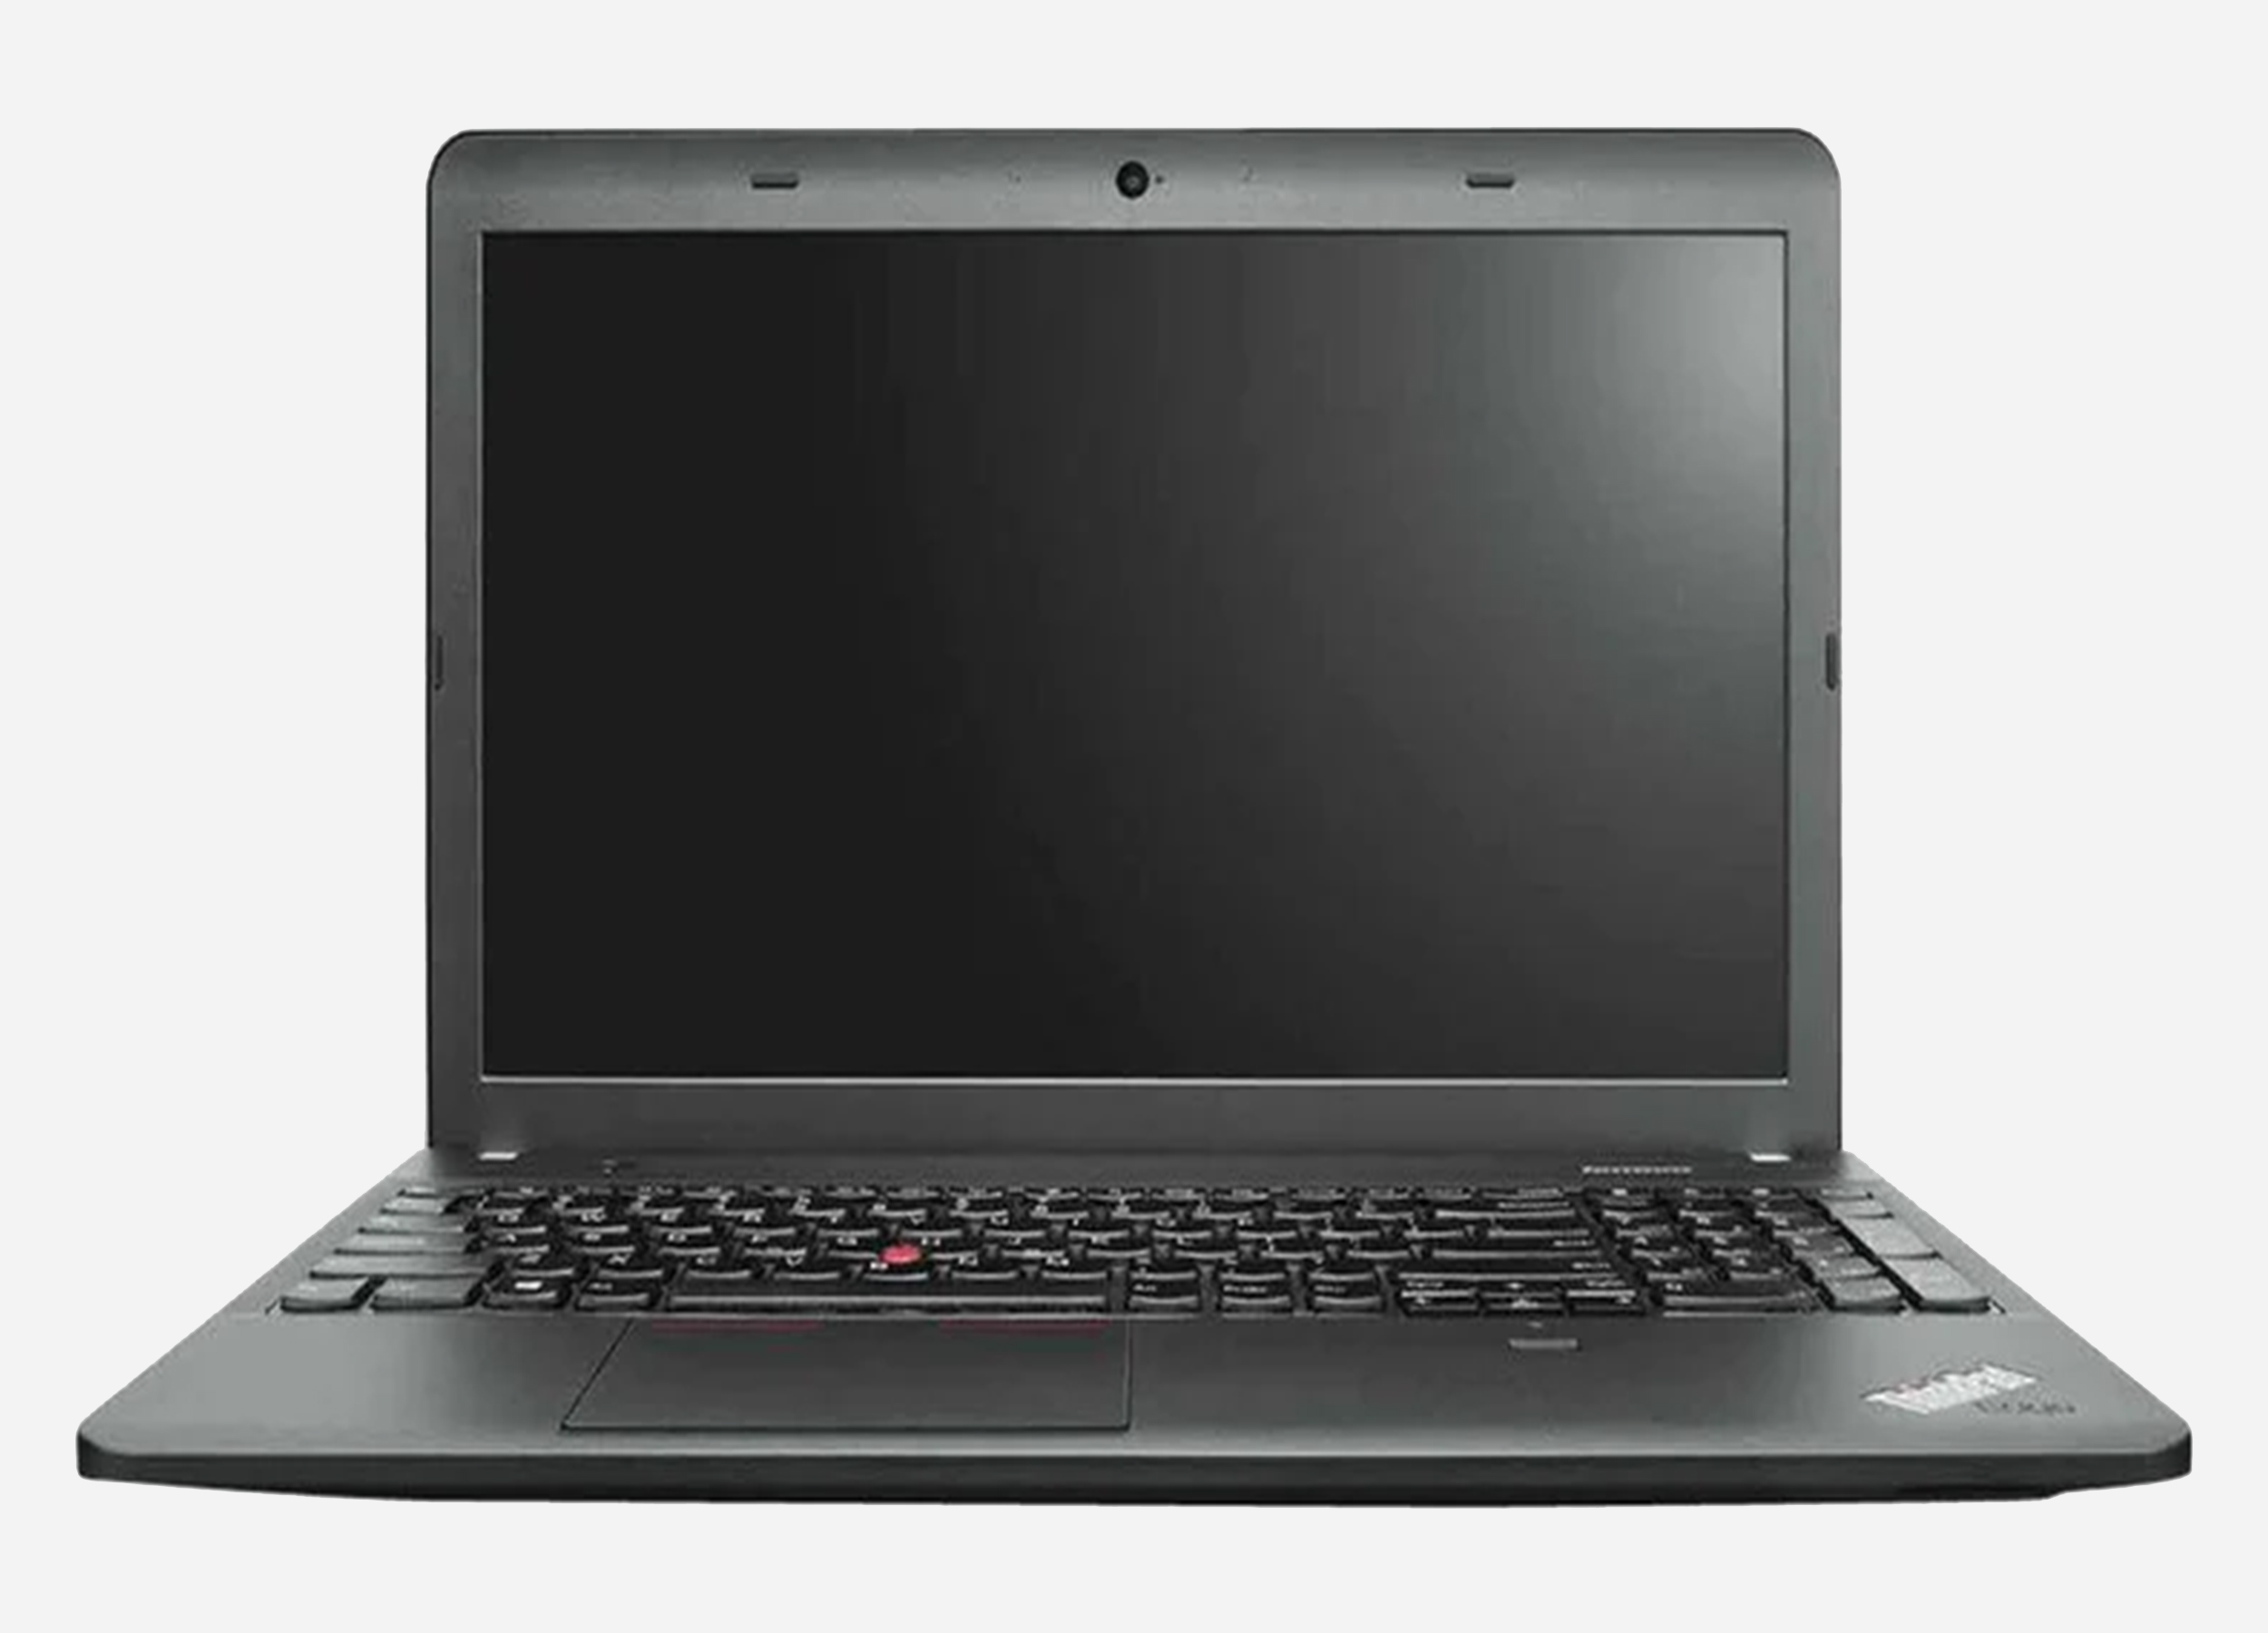 Lenovo ThinkPad E540 I7 4700MQ Notebook